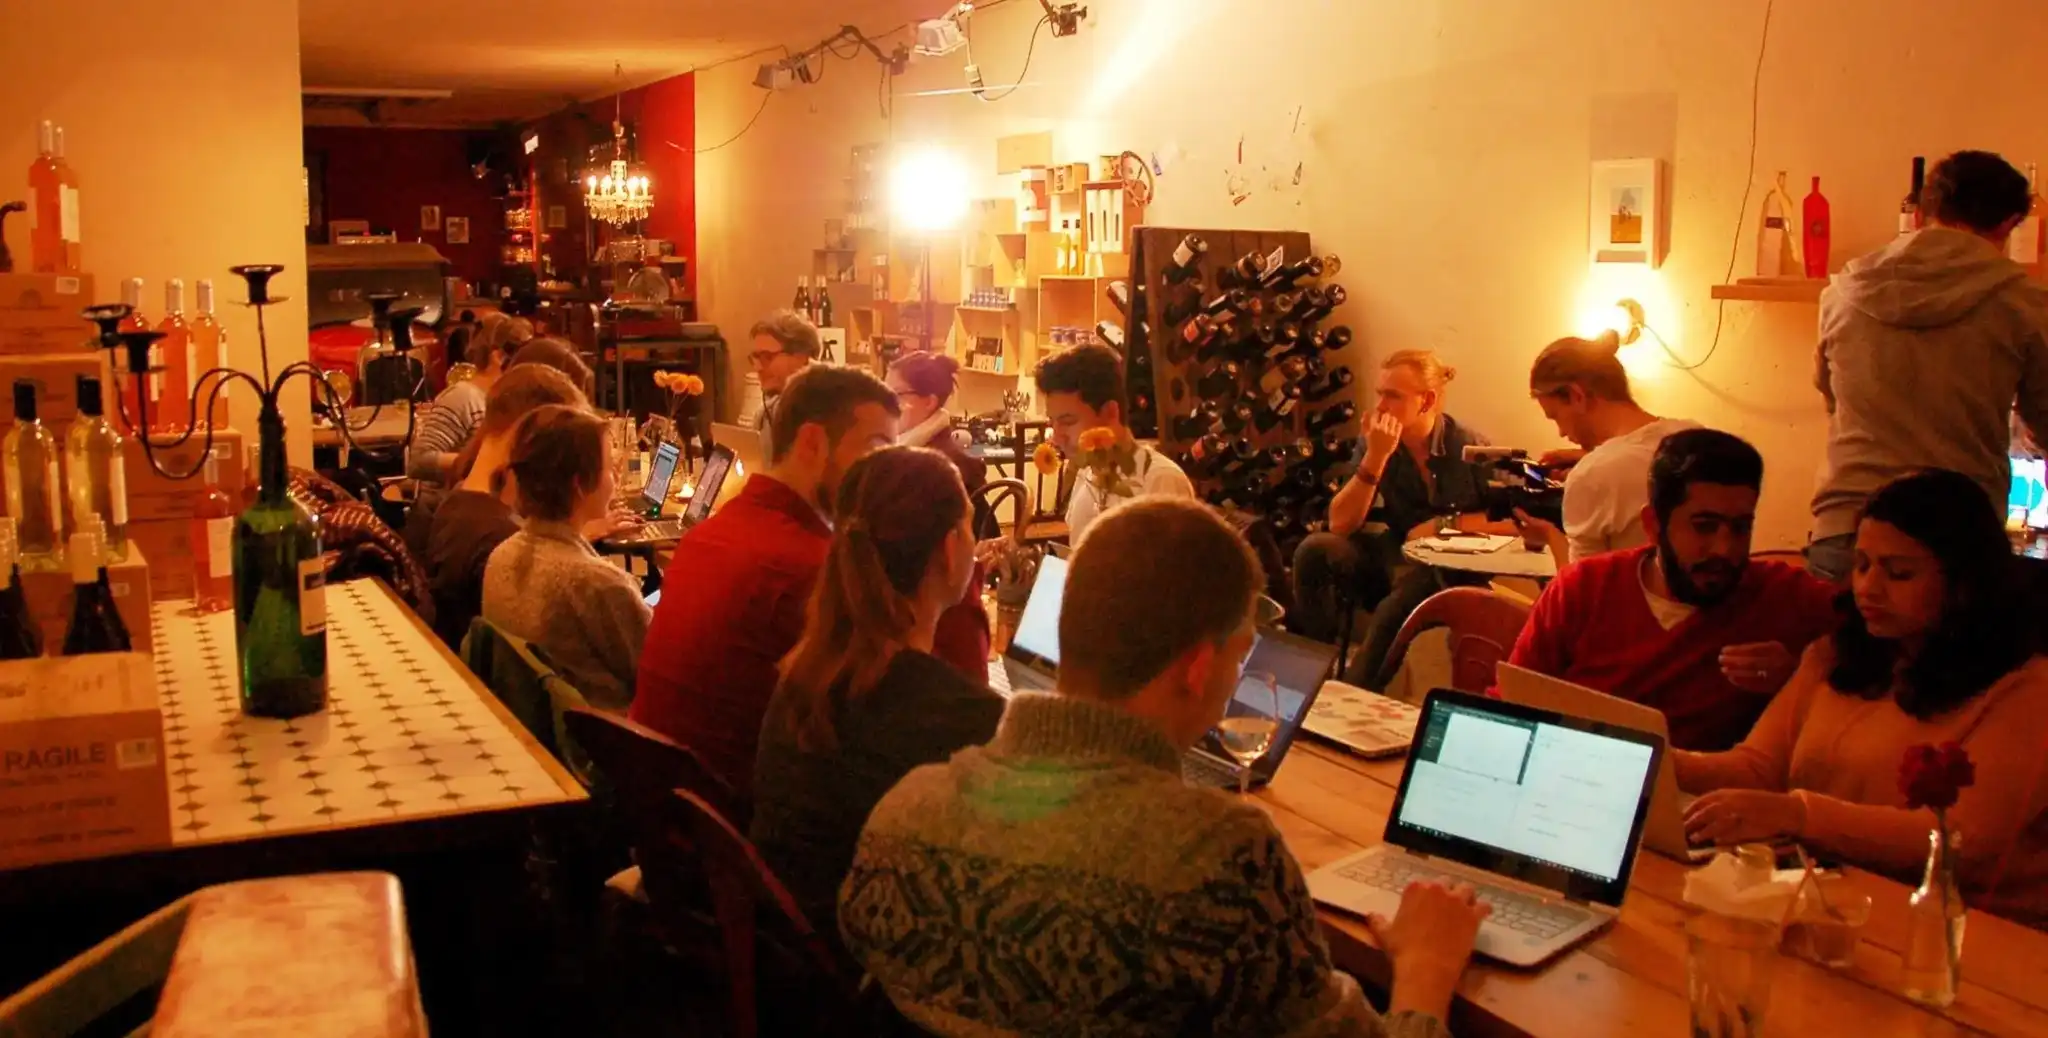 Mehrere Personen sitzen gesellig am Tisch und arbeiten an Laptops